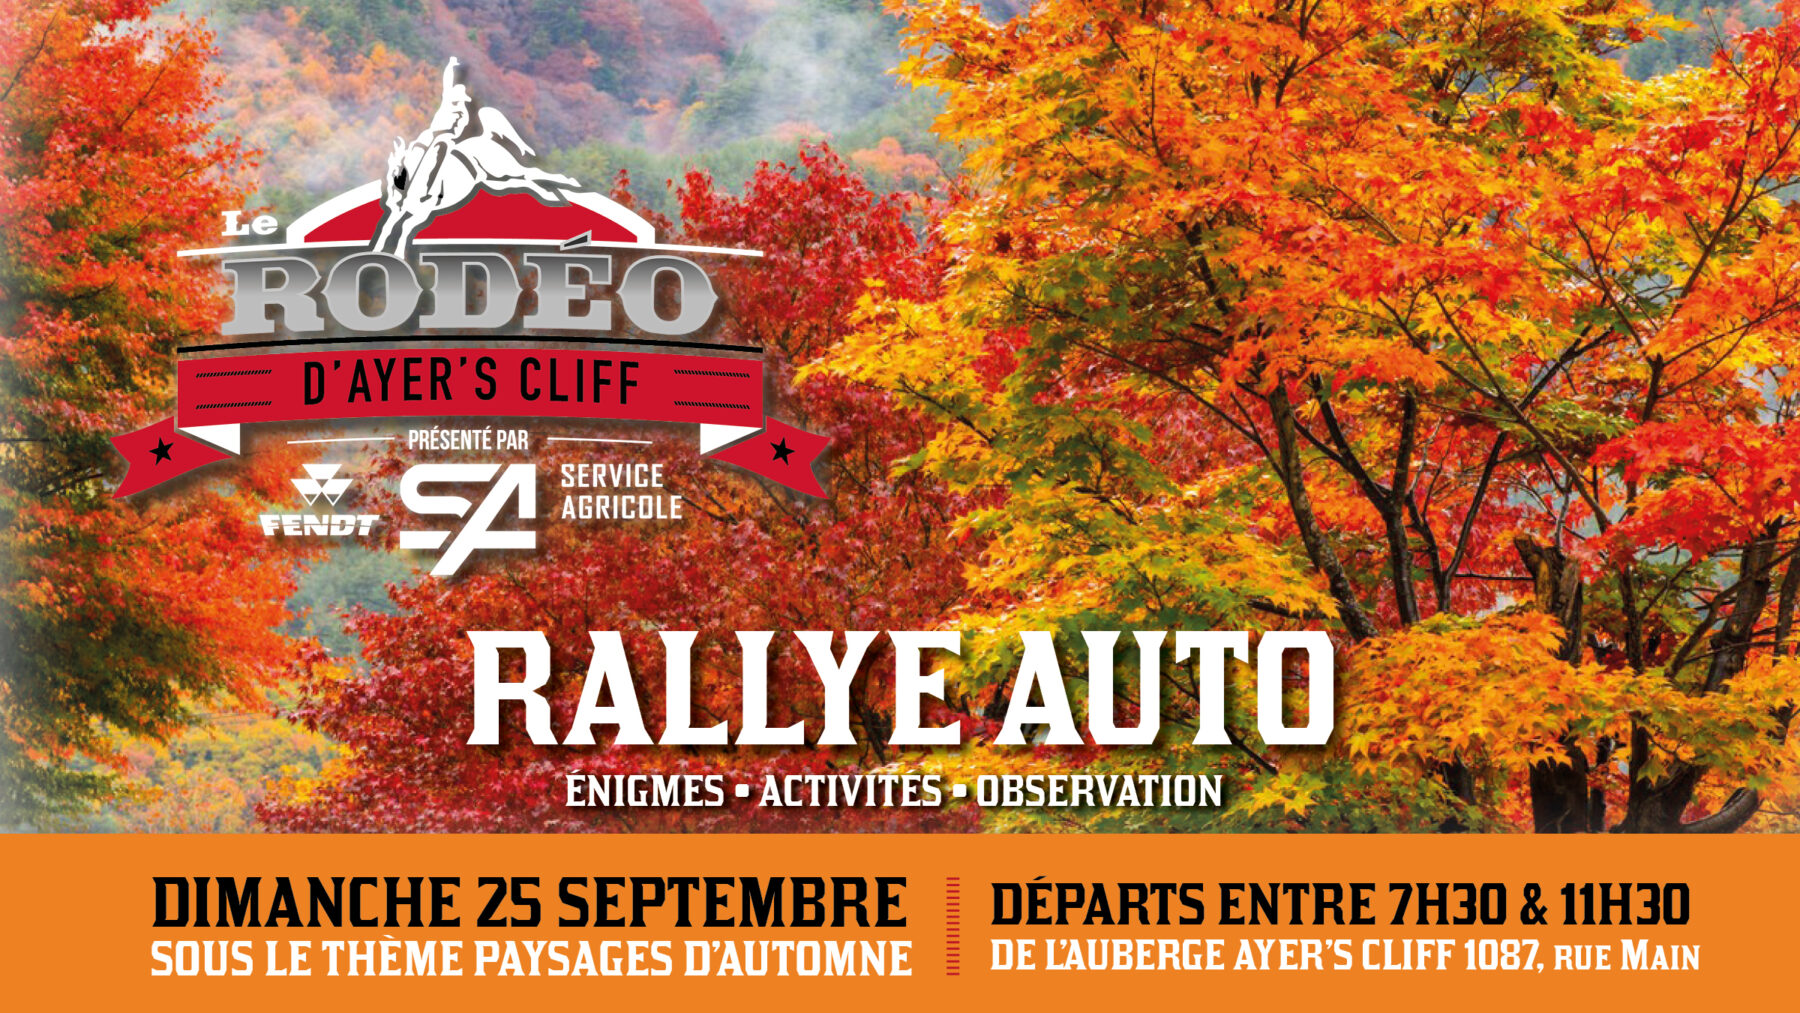 Rally Auto - Événements spéciaux du Rodéo d'Ayer's Cliff